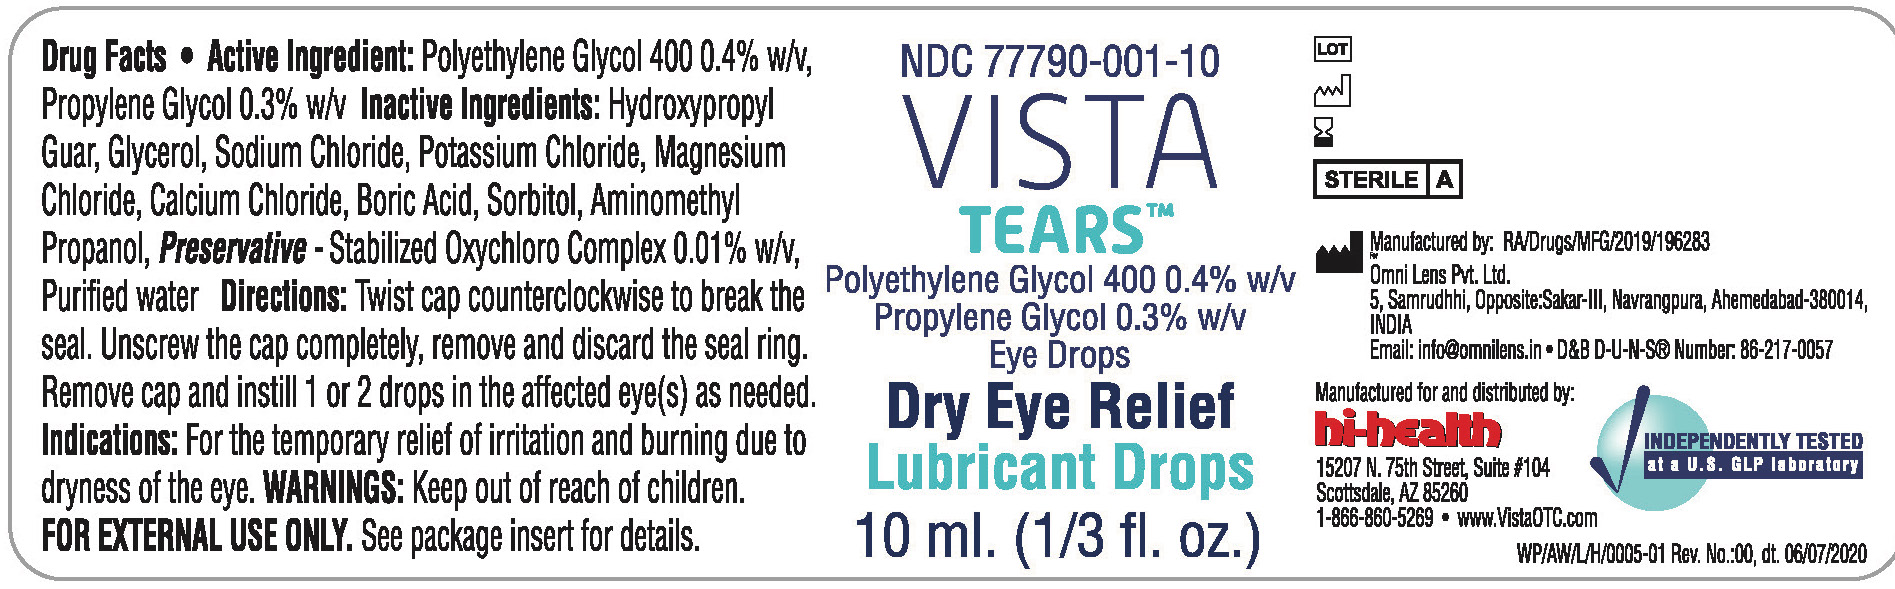 Bottle Label for Vista Tears 77790-001